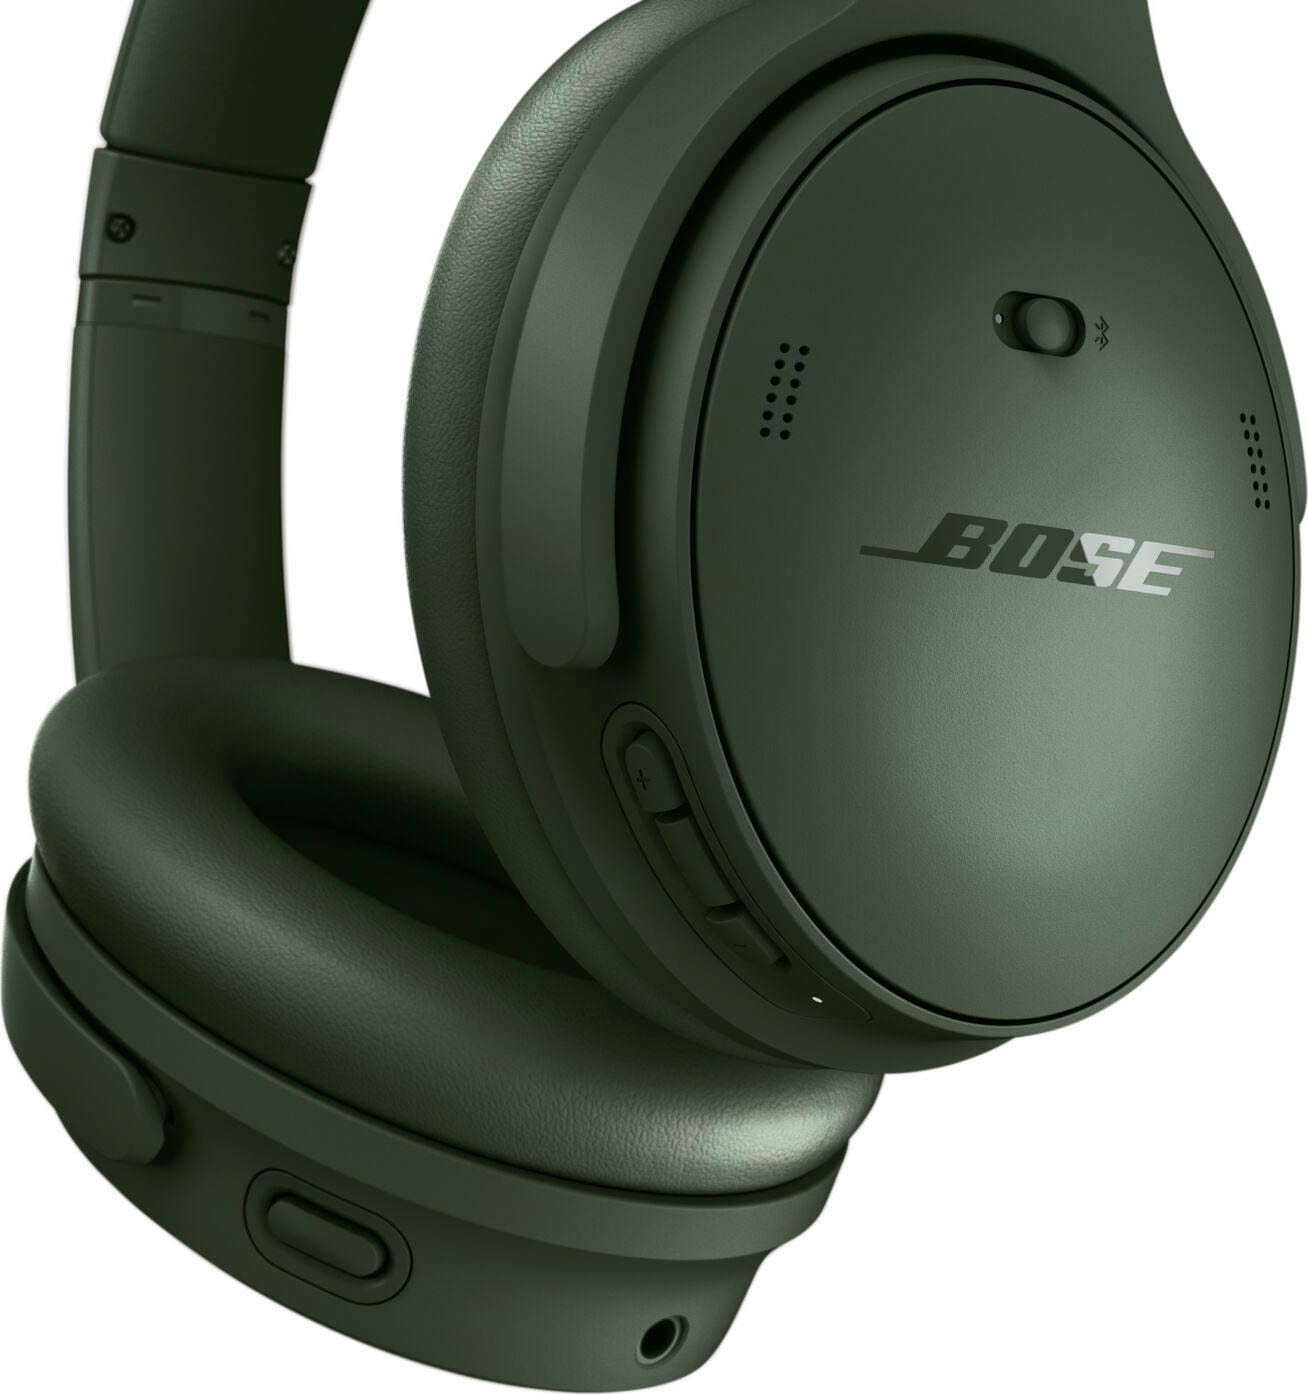 Bose Over-Ear-Kopfhörer »QuietComfort Noise Cancelling Kopfhörer«, Bluetooth, Rauschunterdrückung, 2 Modi, Anpassbare Einstellungen, Audiokabel mit integriertem Mikrofon